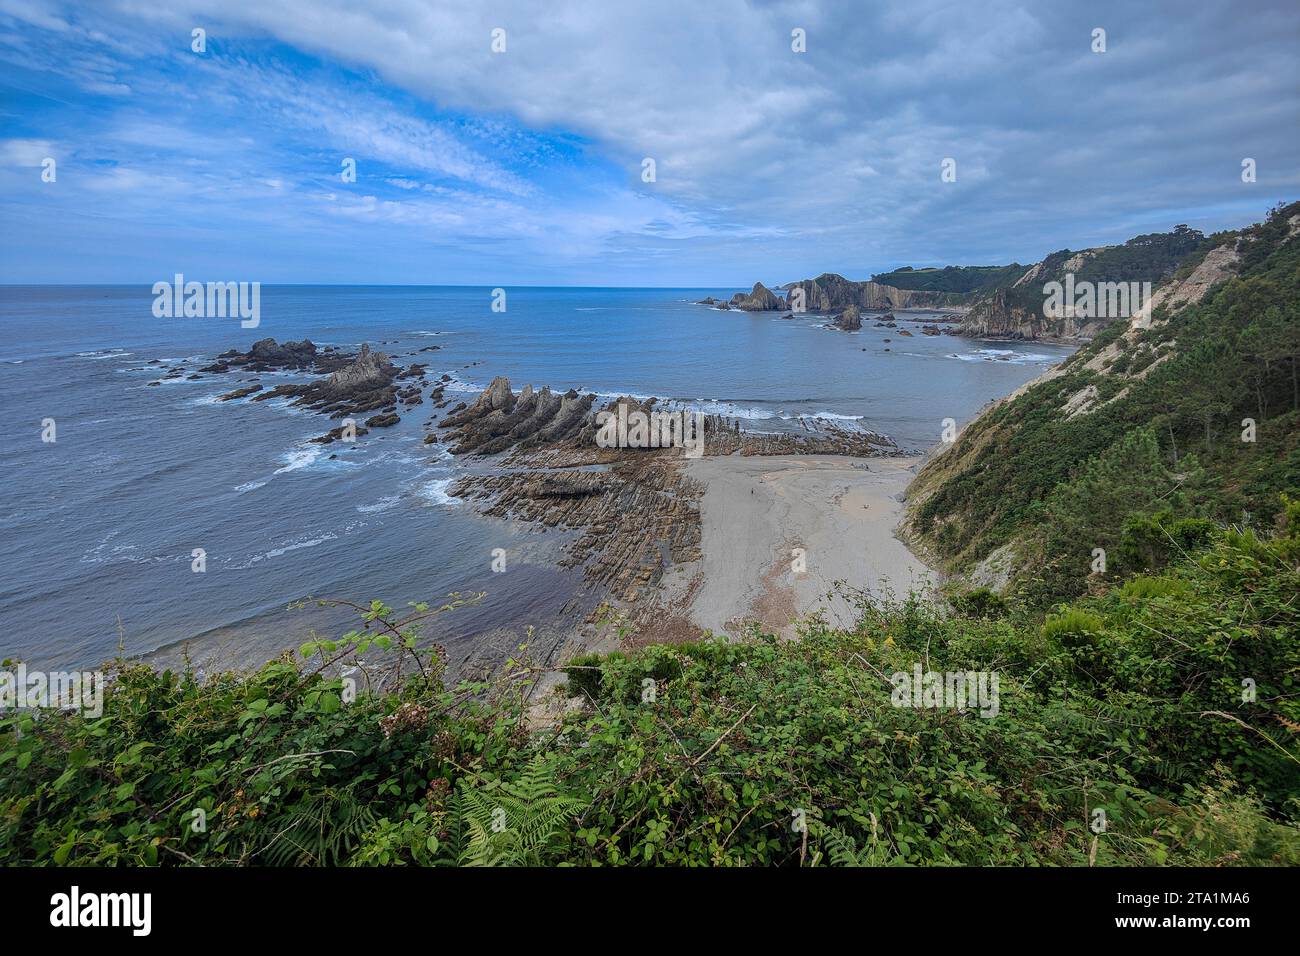 crique de plage rocheuse avec verdure luxuriante sur les falaises sous un beau ciel bleu Banque D'Images